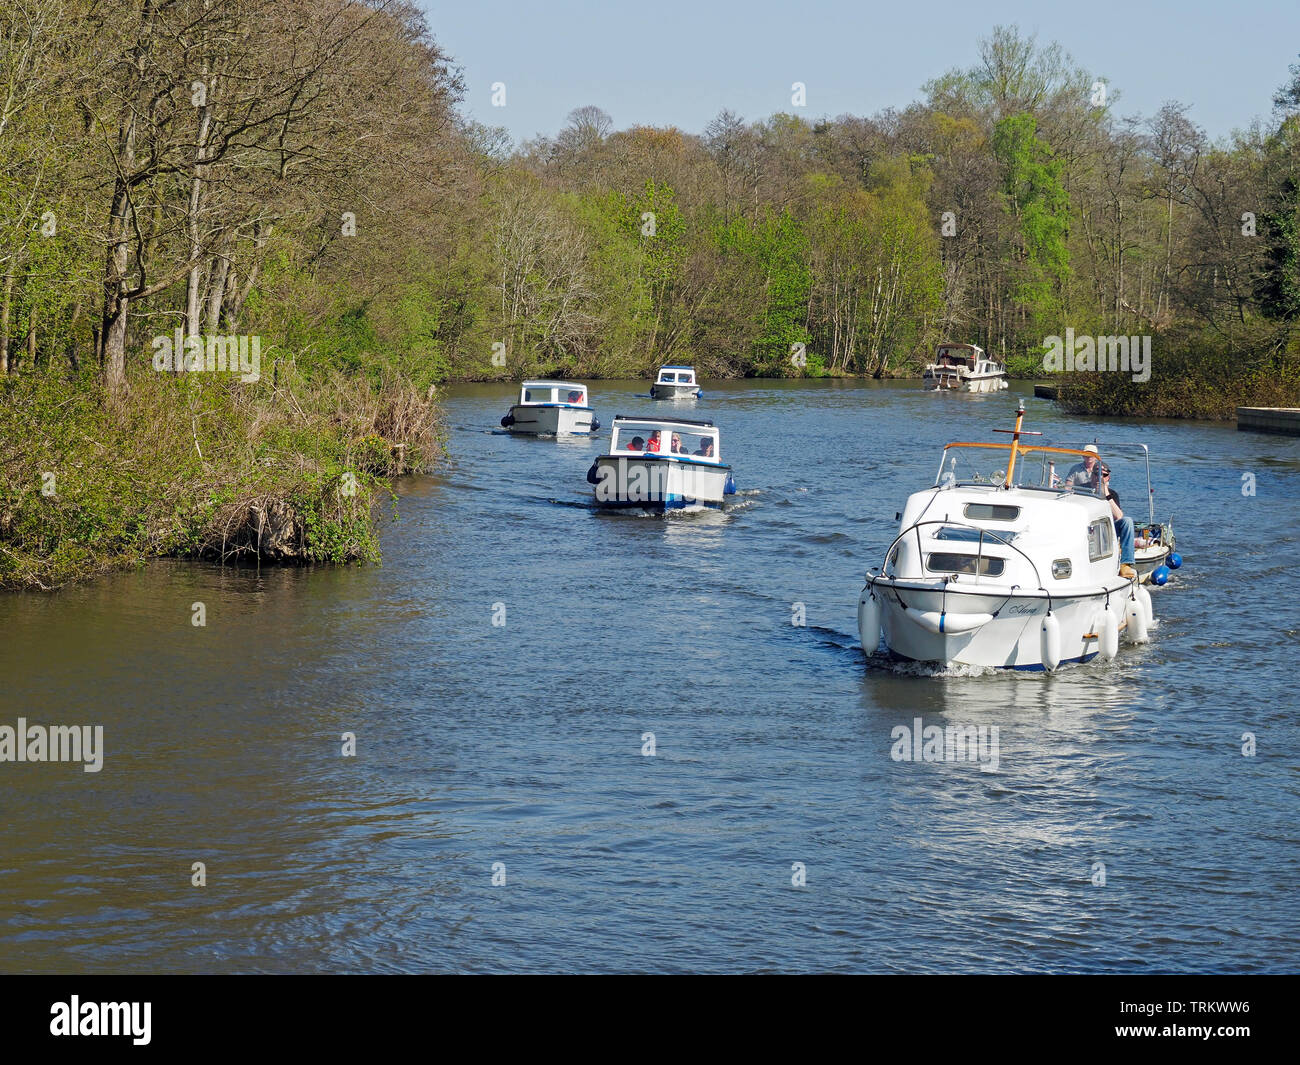 Vedette à moteur et bateaux jour profitez d'une journée ensoleillée sur la rivière Bure près de Wroxham sur les Norfolk Broads. Banque D'Images